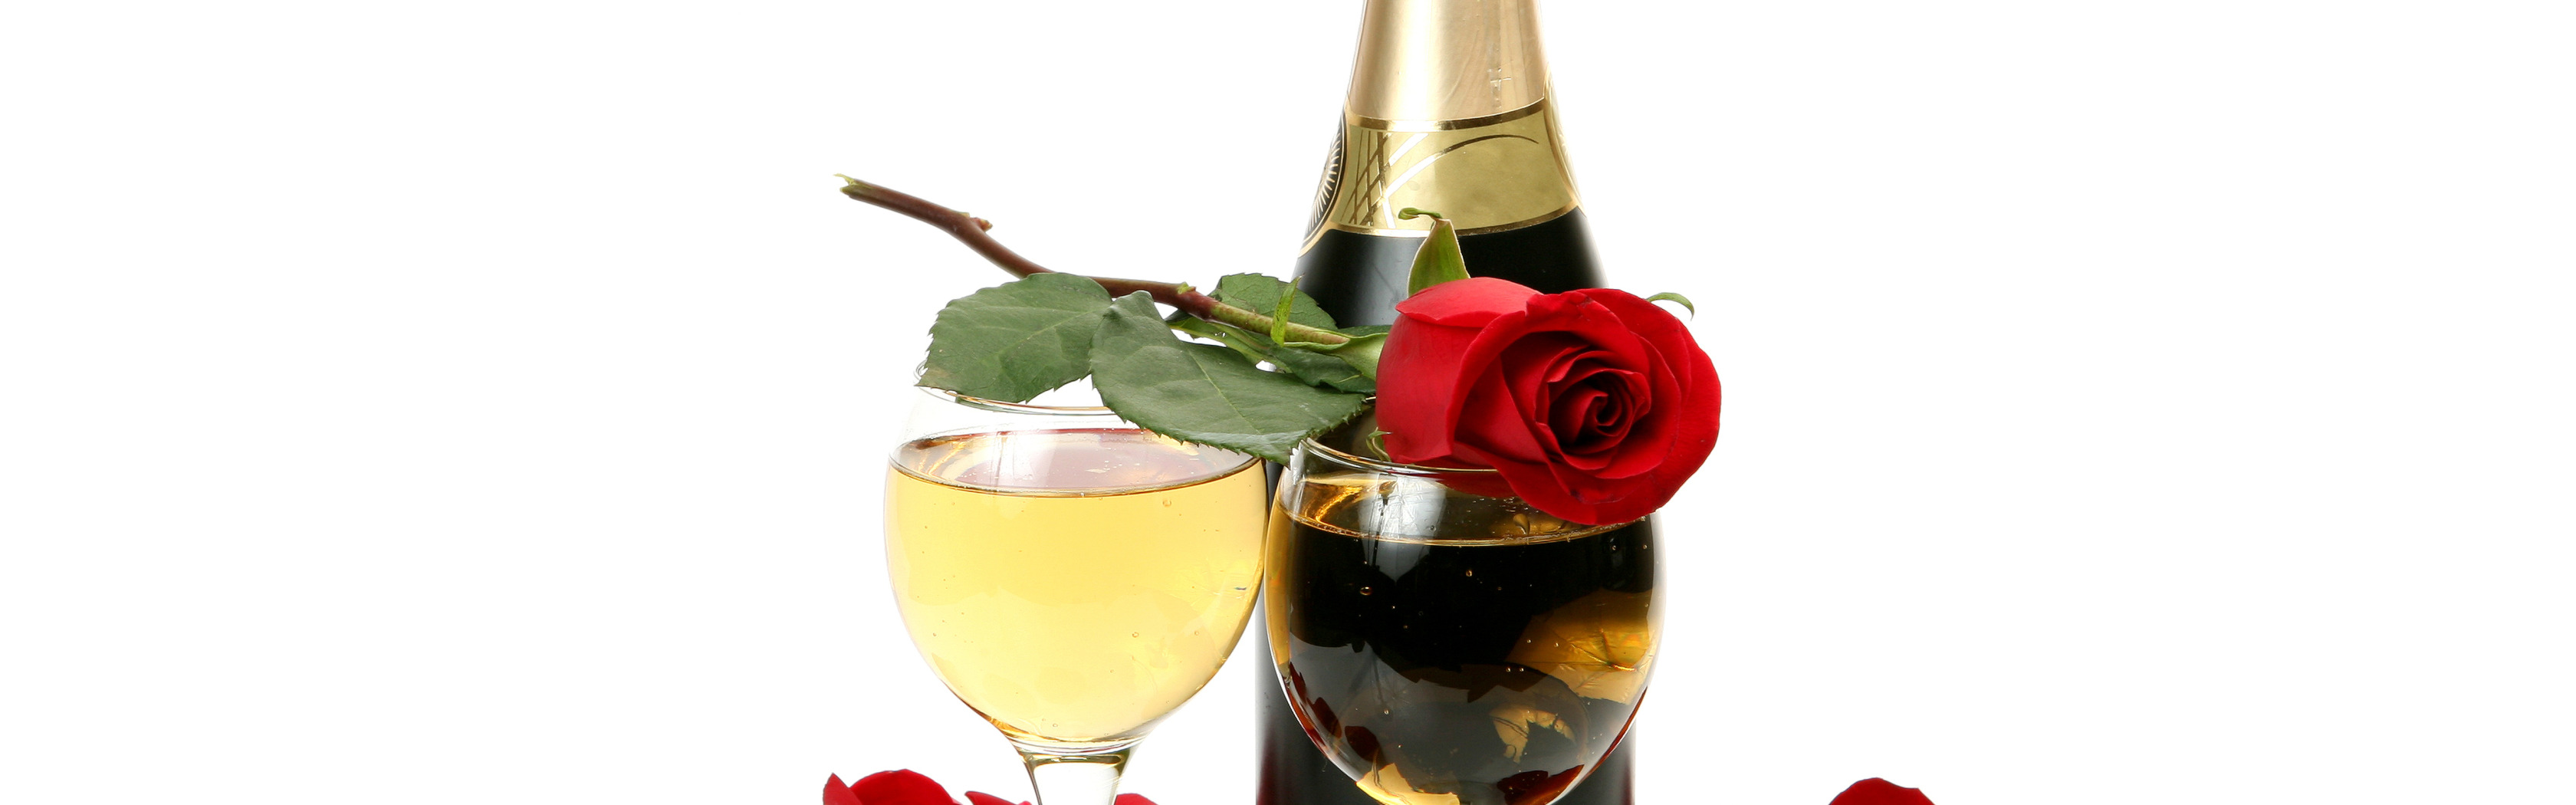 Шампанское и розы 81 глава на русском